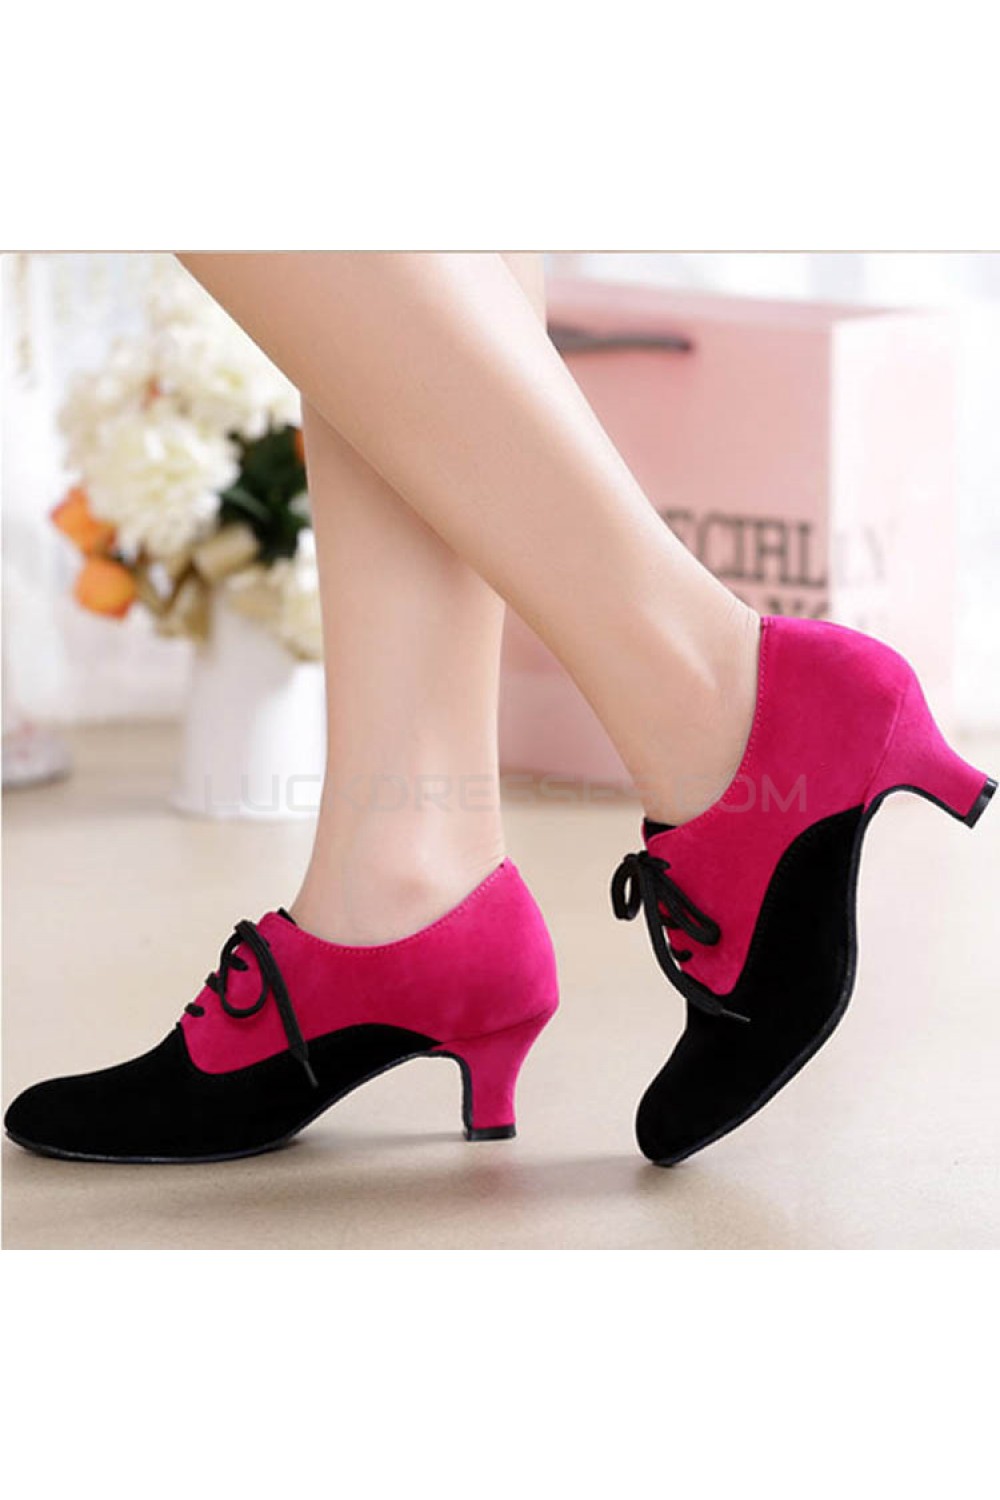 rose red heels